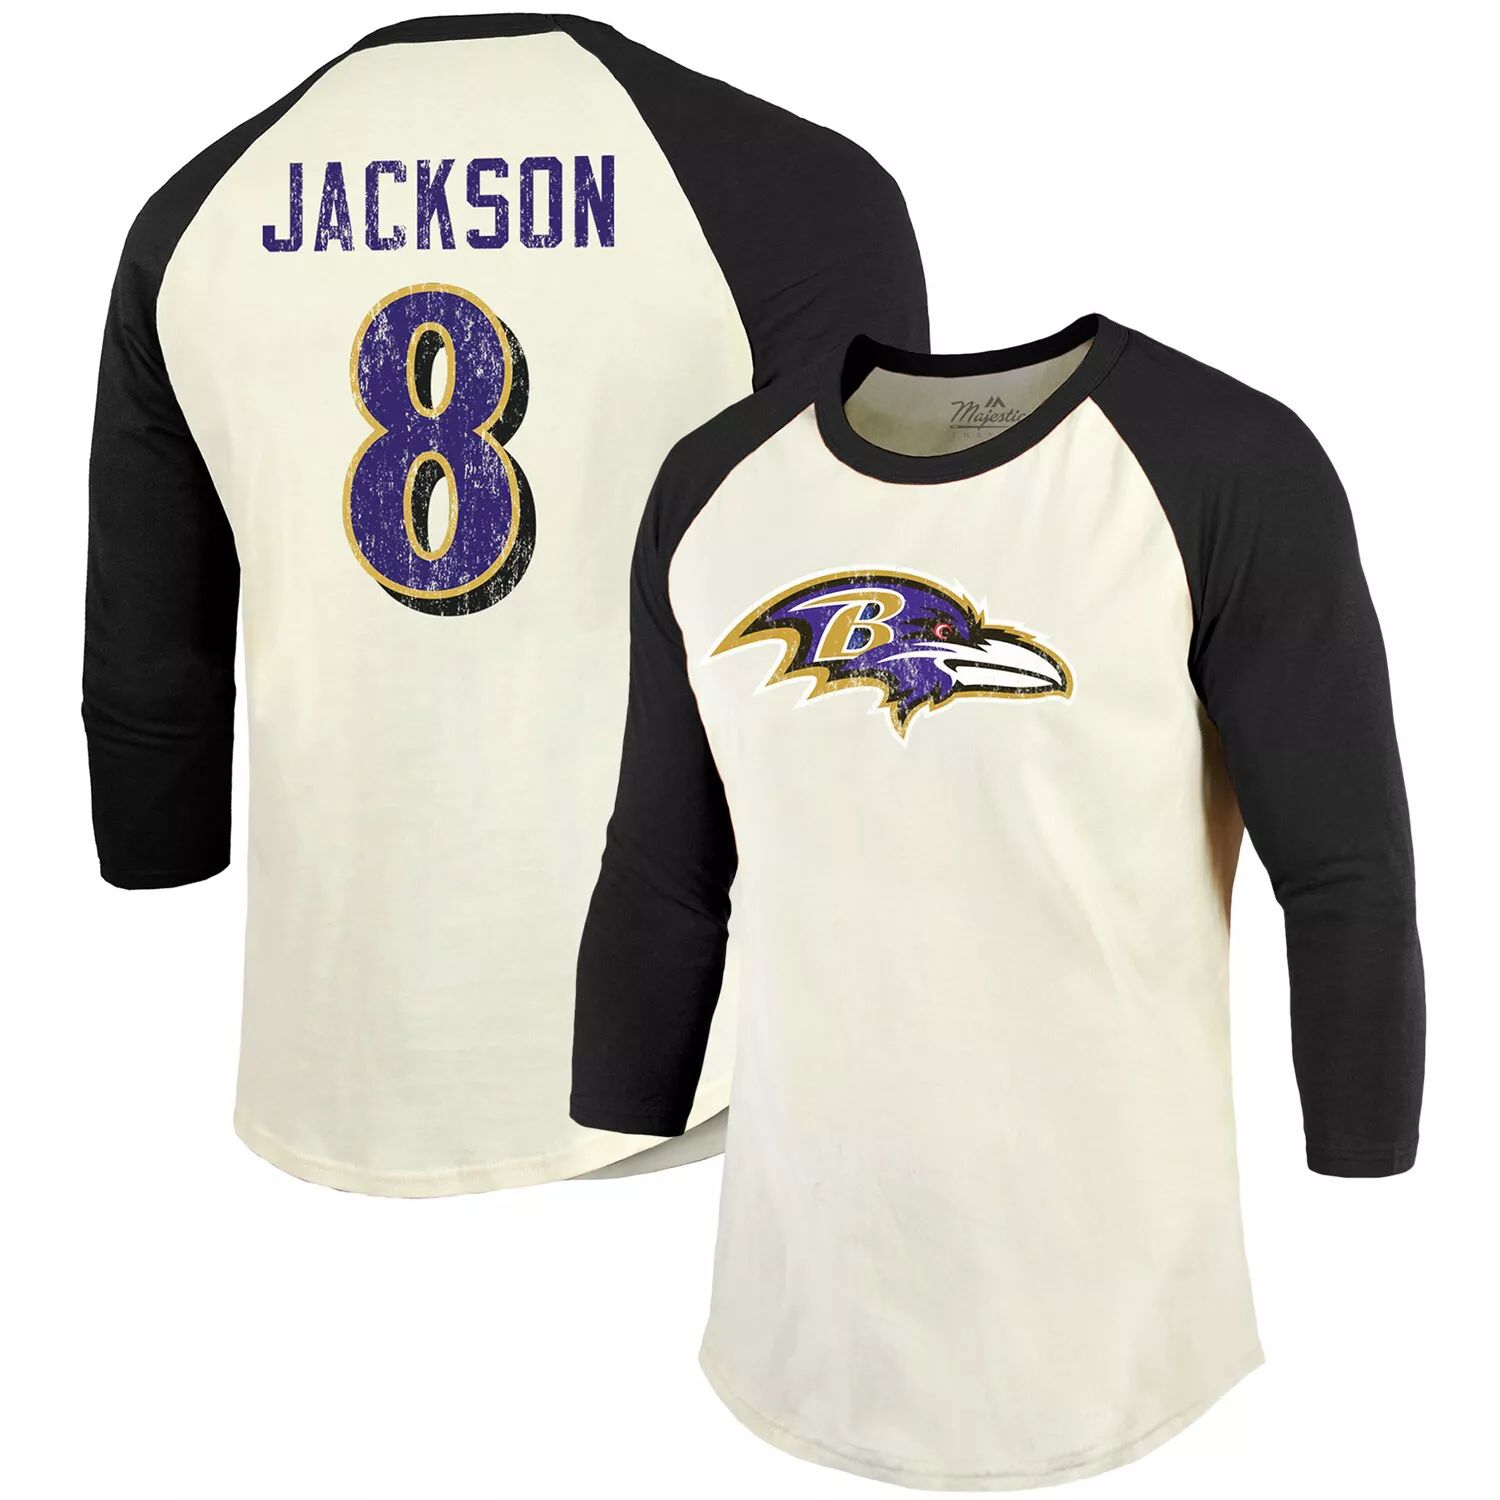 Мужская винтажная футболка Fanatics с логотипом Lamar Jackson кремового/черного цвета Baltimore Ravens с именем и номером игрока реглан с рукавами 3/4 Majestic